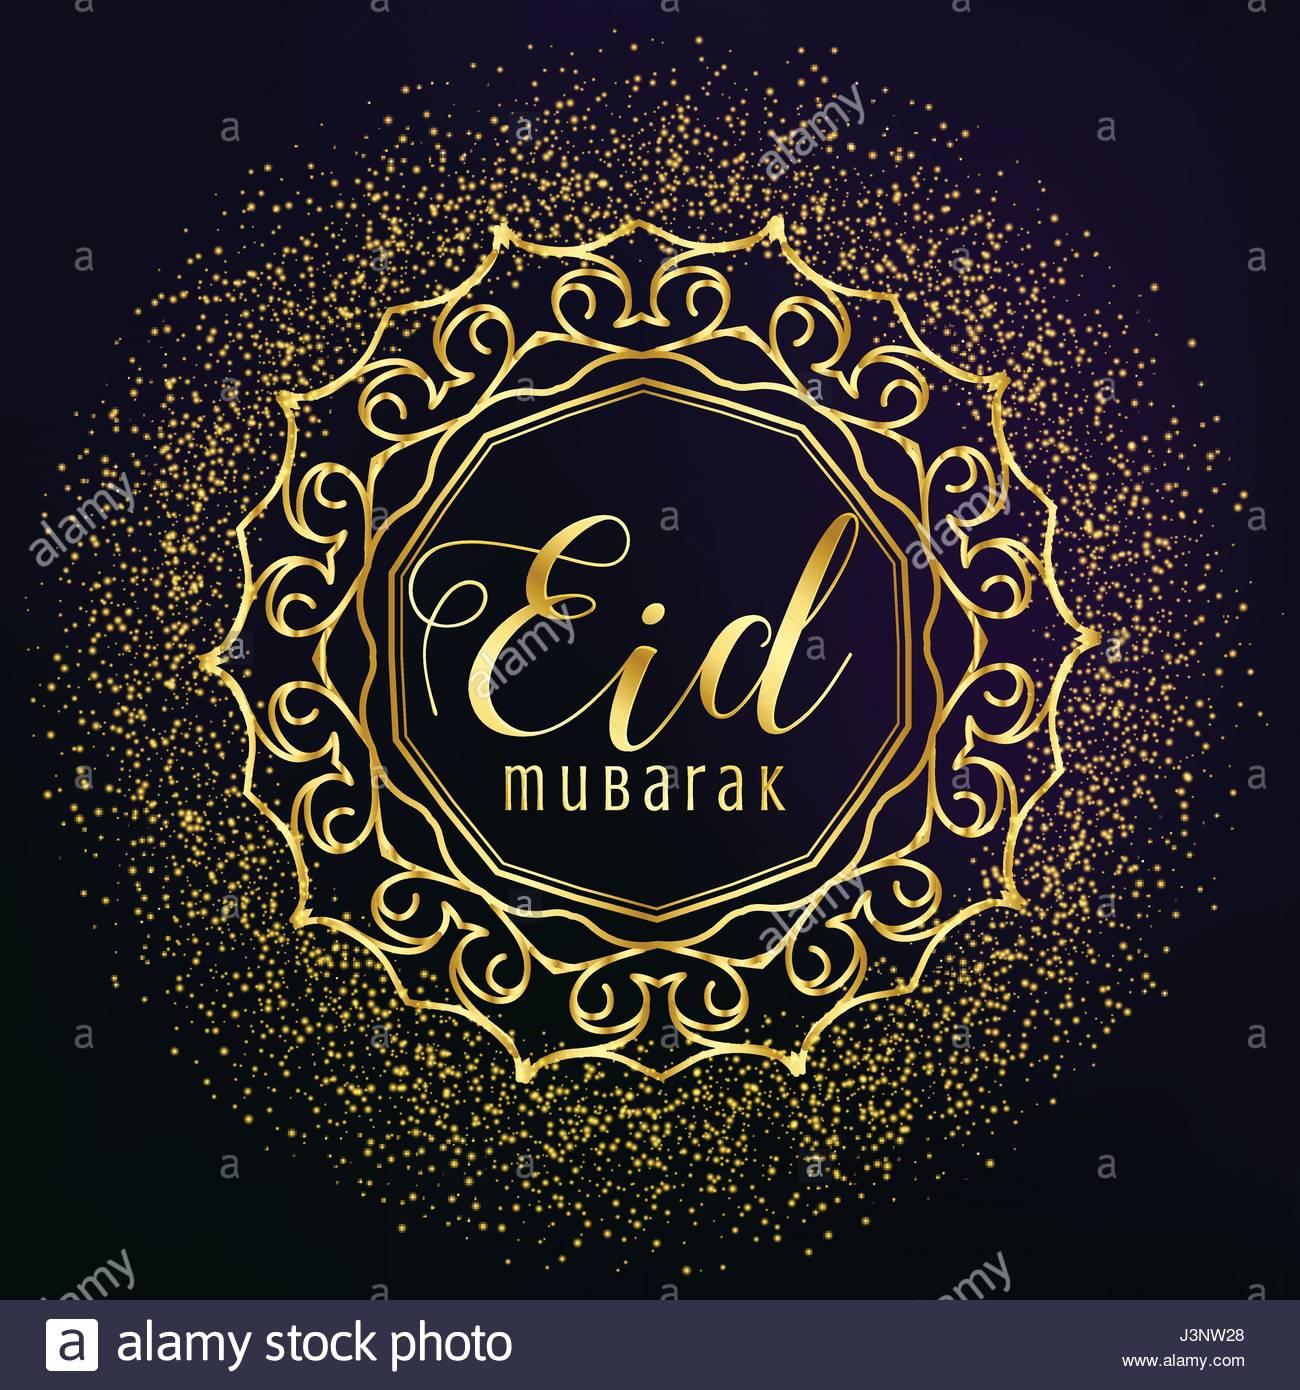 Eid mubarak greeting with golden mandala decoration and 